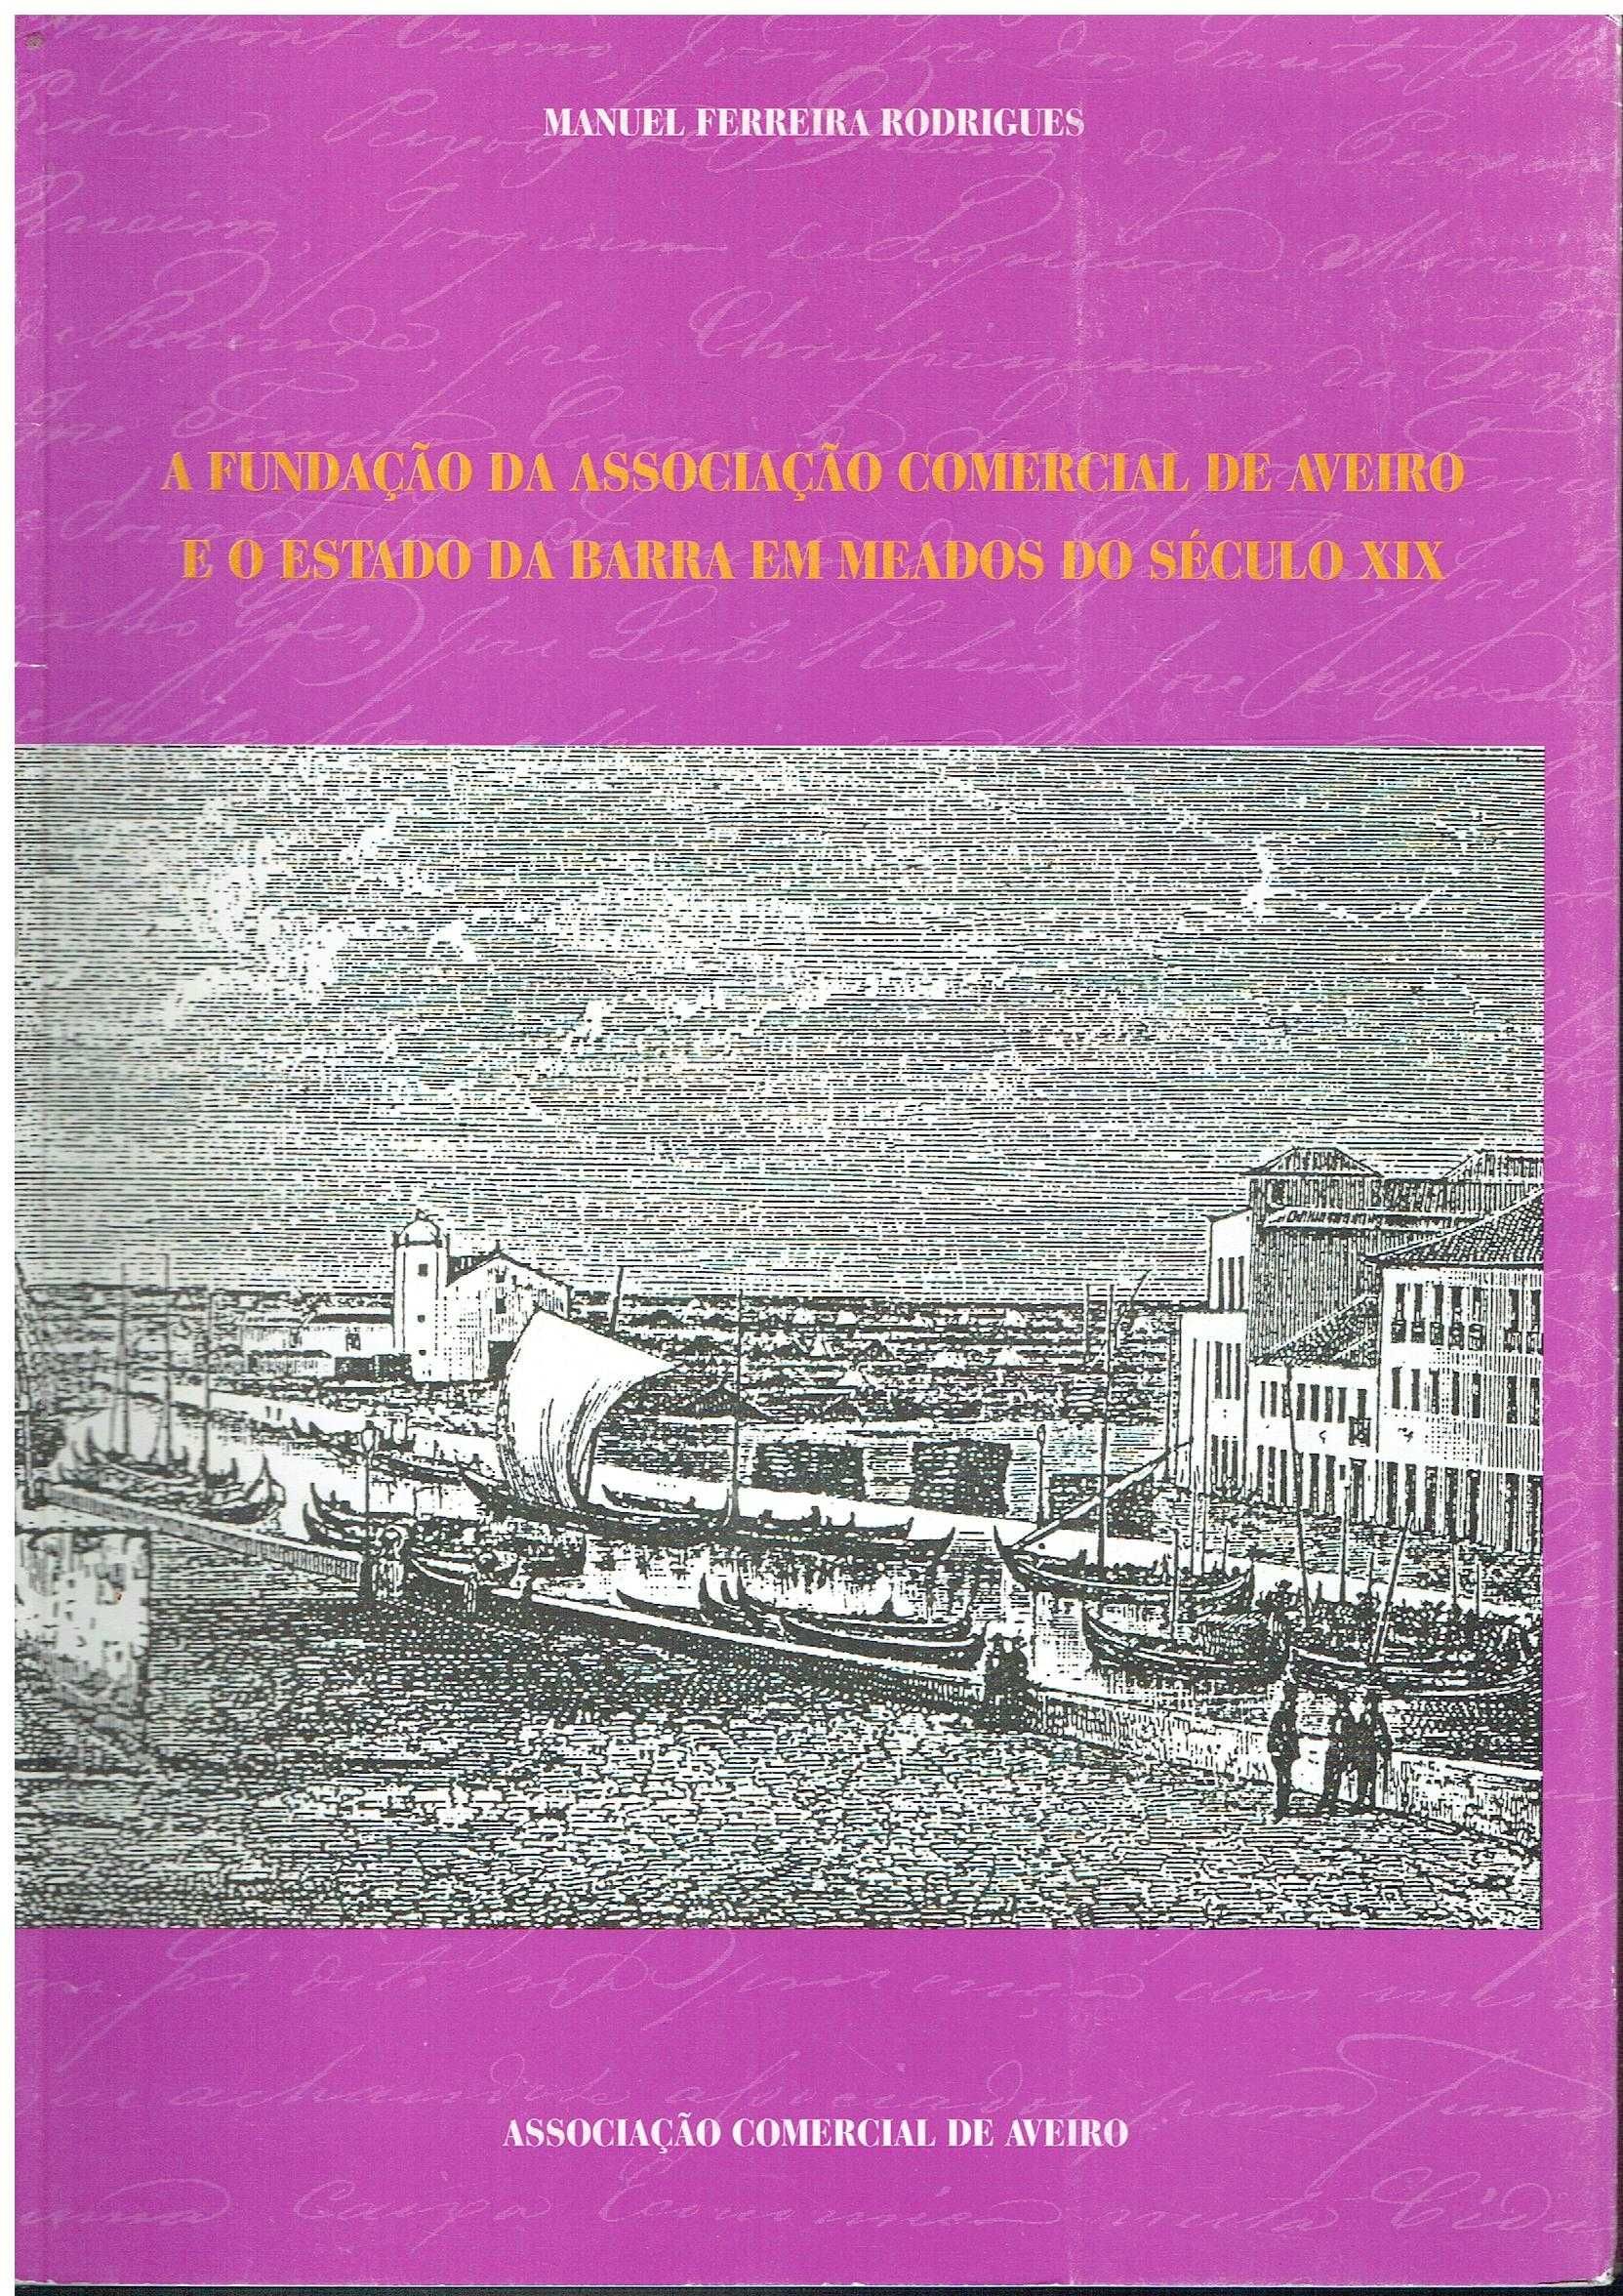 5770 - Monografias - Livros sobre a Cidade de Aveiro 5